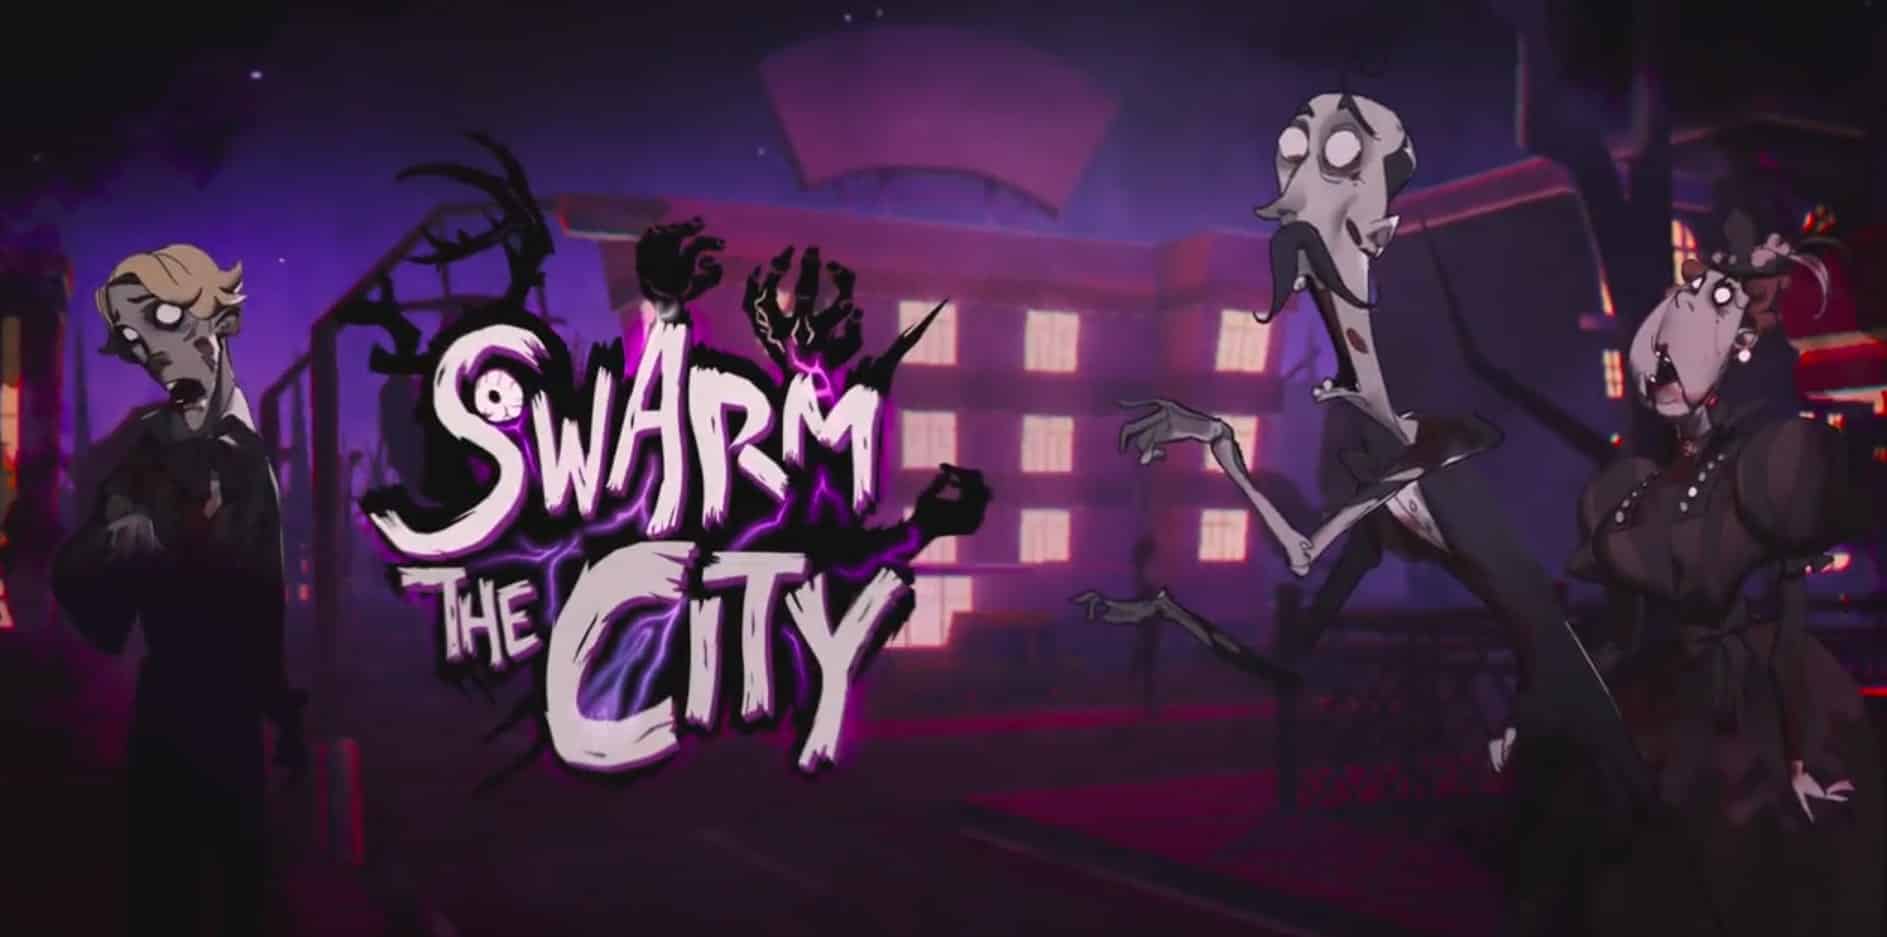 Swarm the city